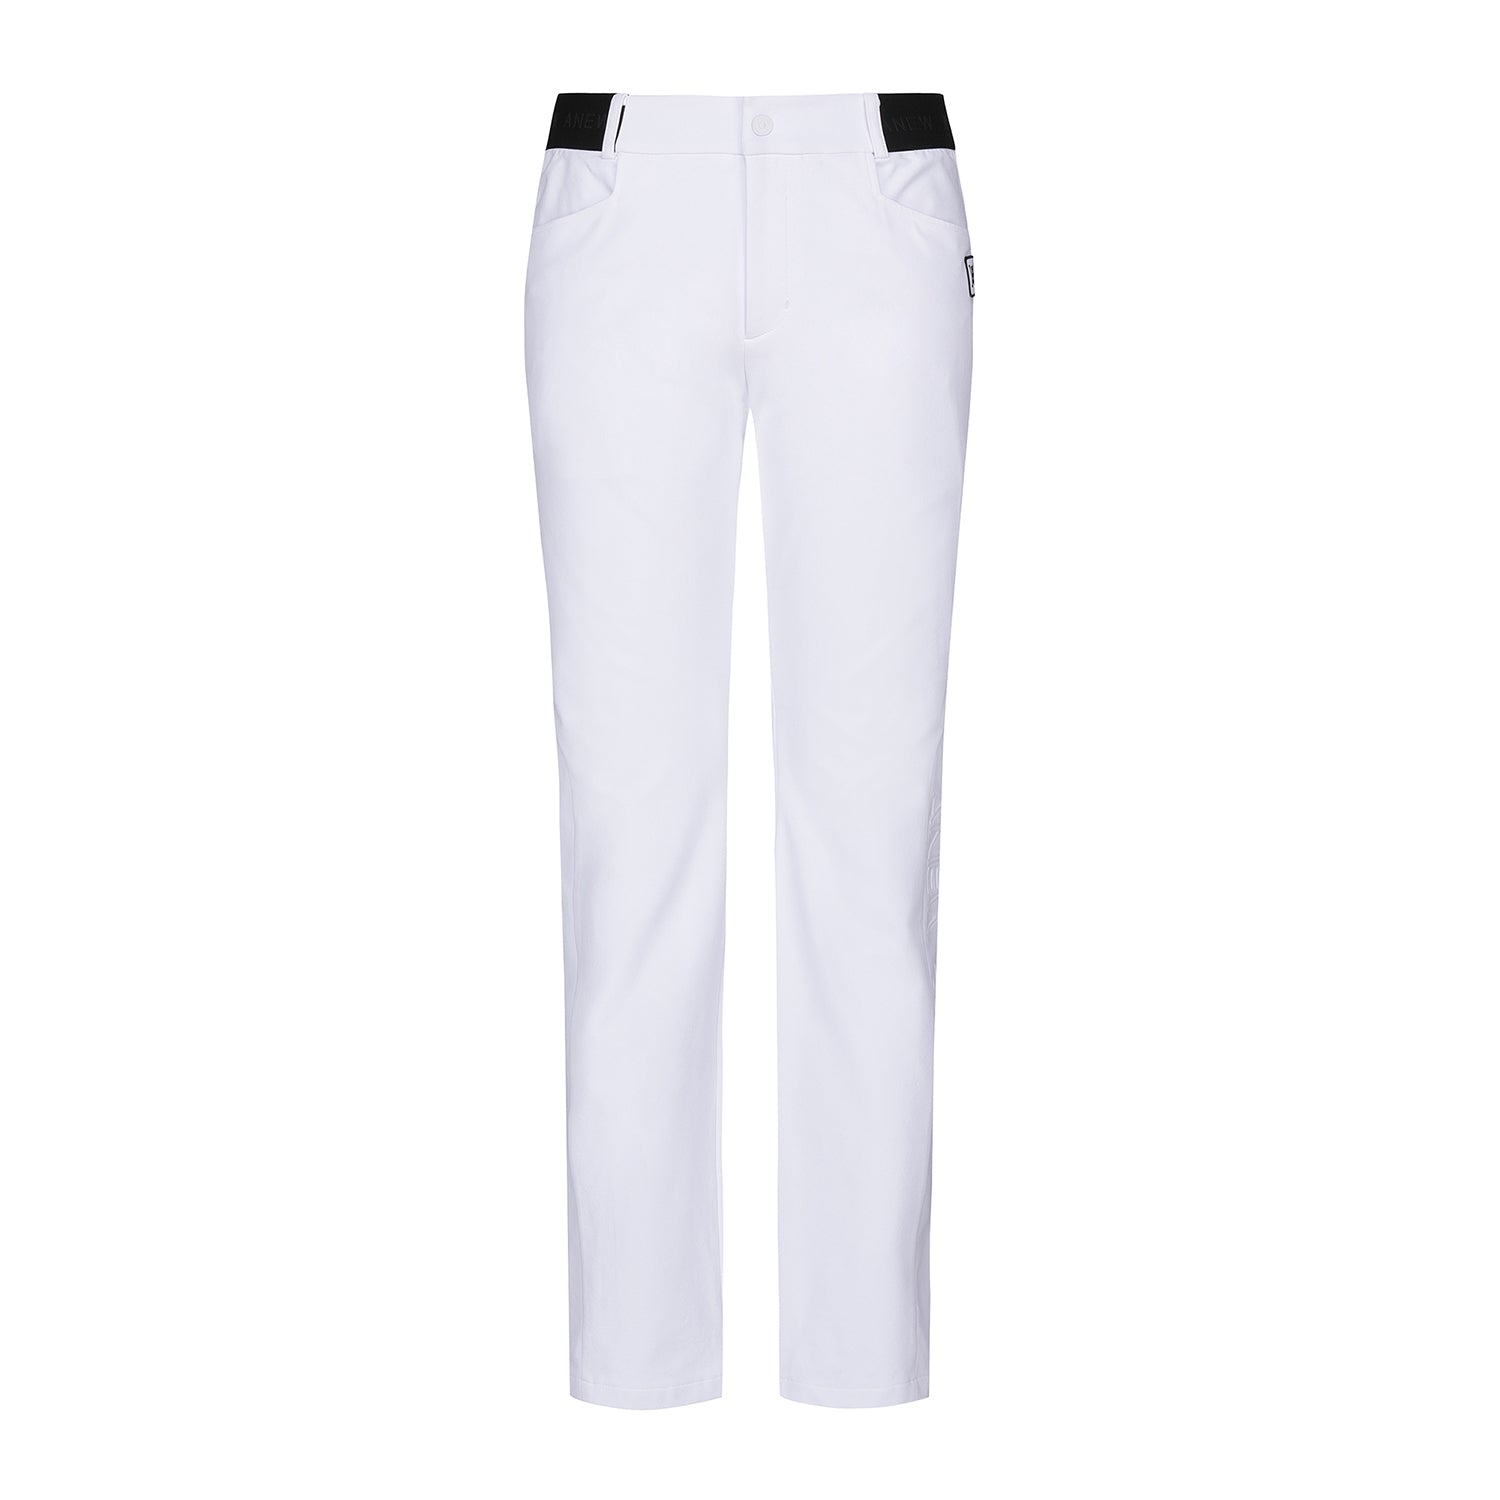 Men's Fleece Basic Long Pants - White